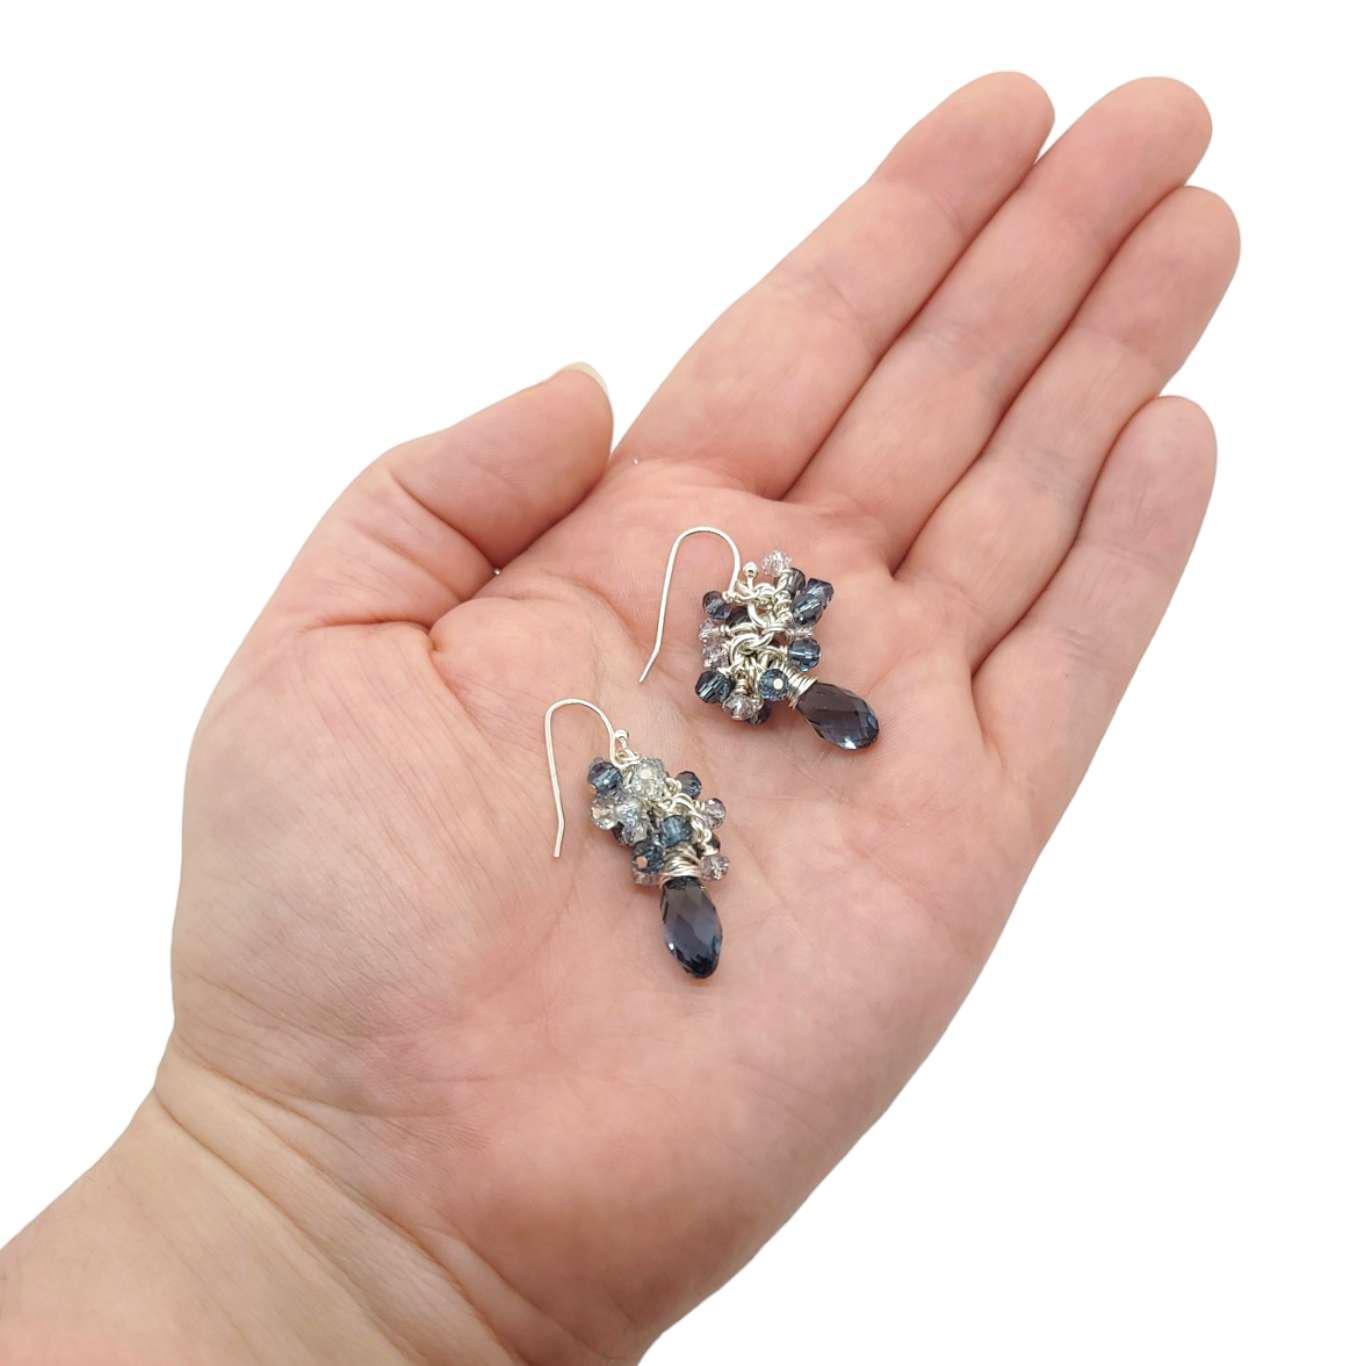 Earrings - Montana Blue Crystal Teardrop Clusters by Sugar Sidewalk